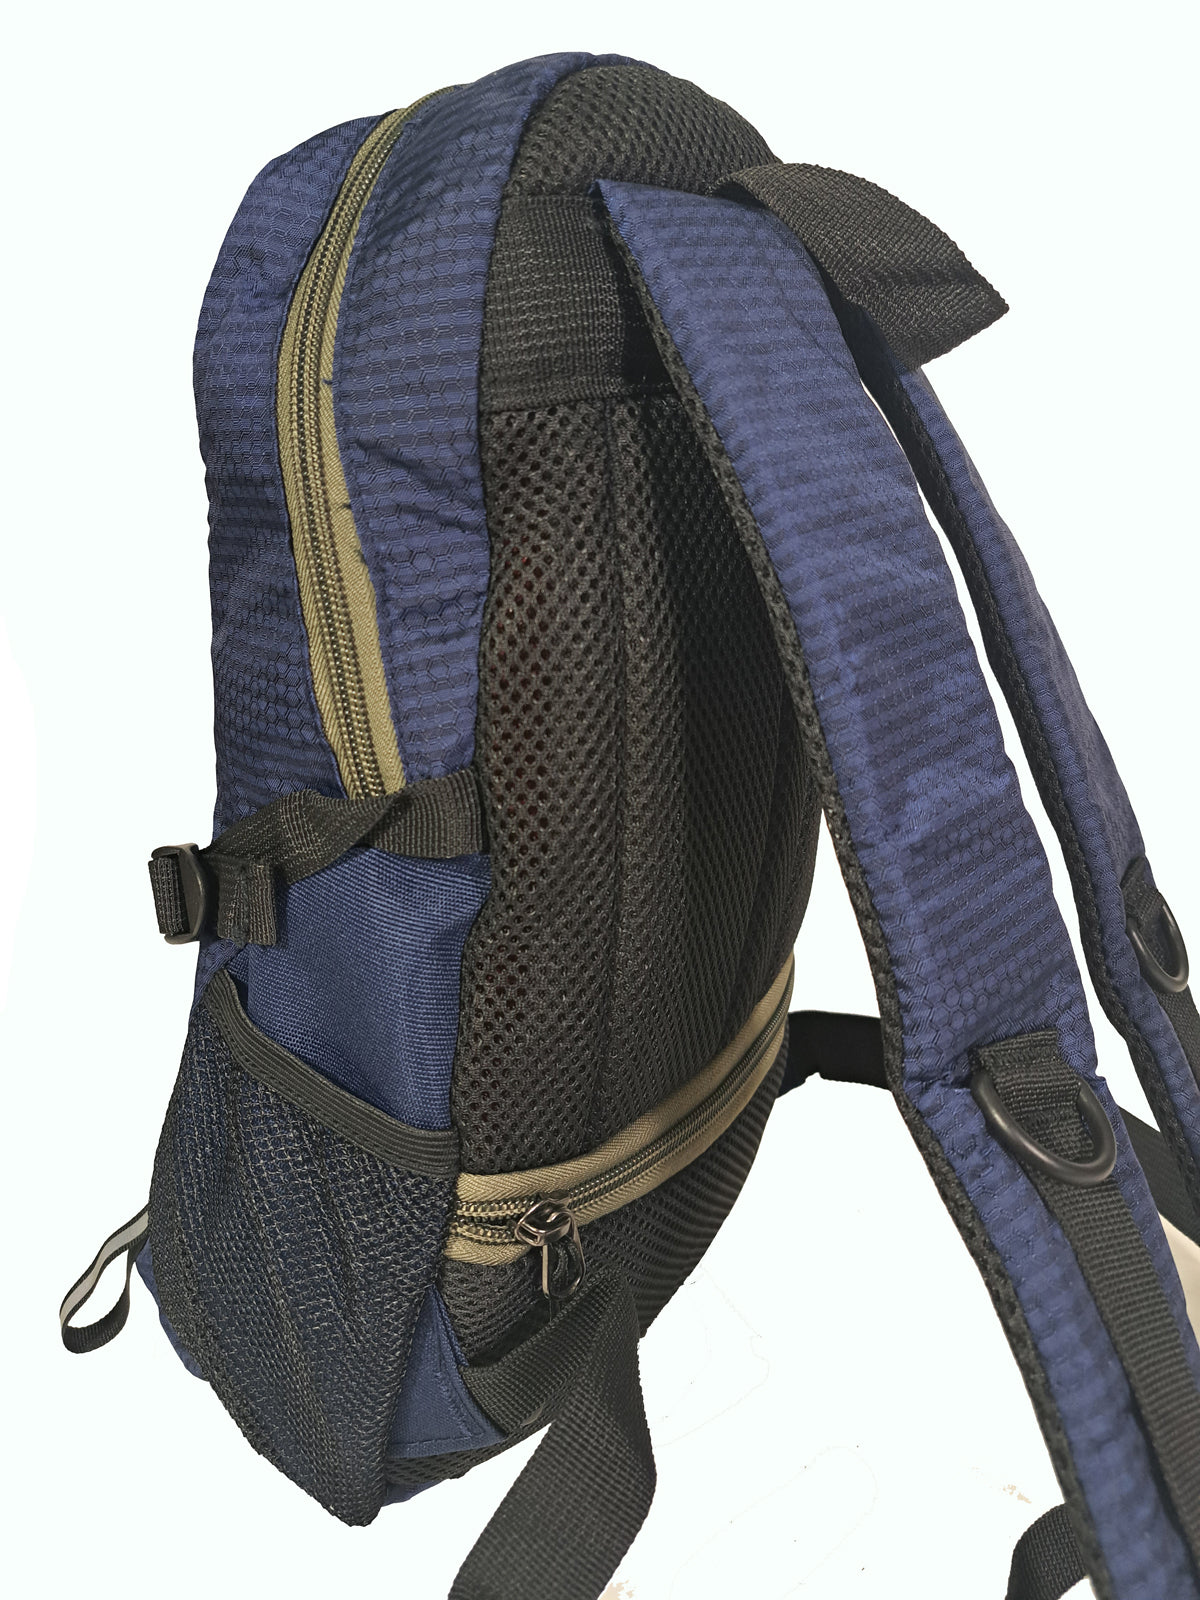 Wandel rugzak, Hiking backpack, citypack perfect model